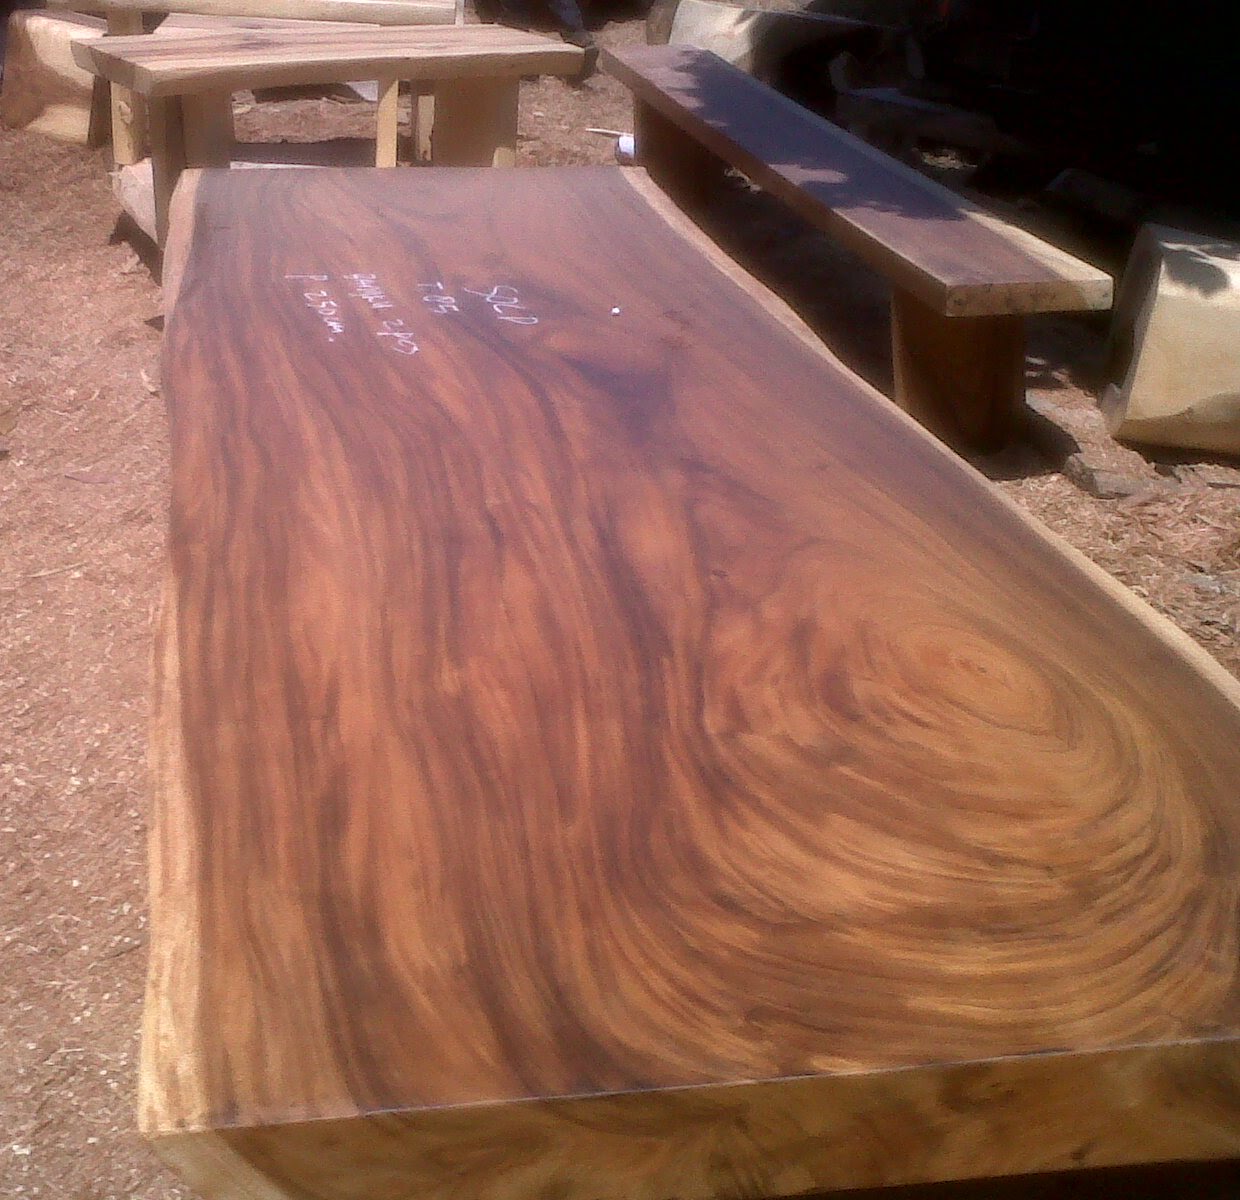 Wood Slab Table